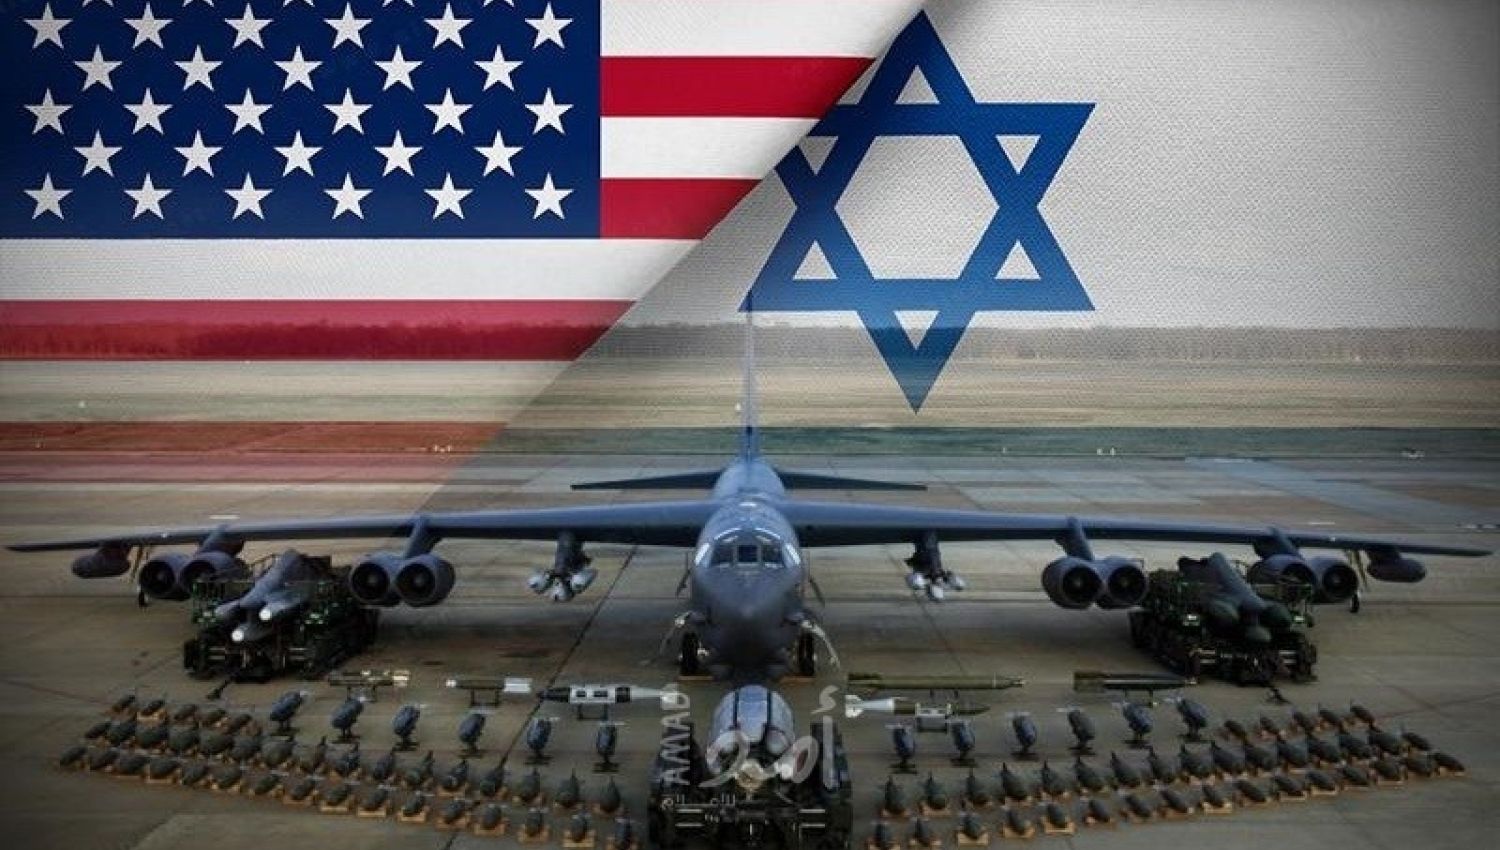 كيف سيكون حال "إسرائيل" لولا الدعم العسكري الأمريكي؟